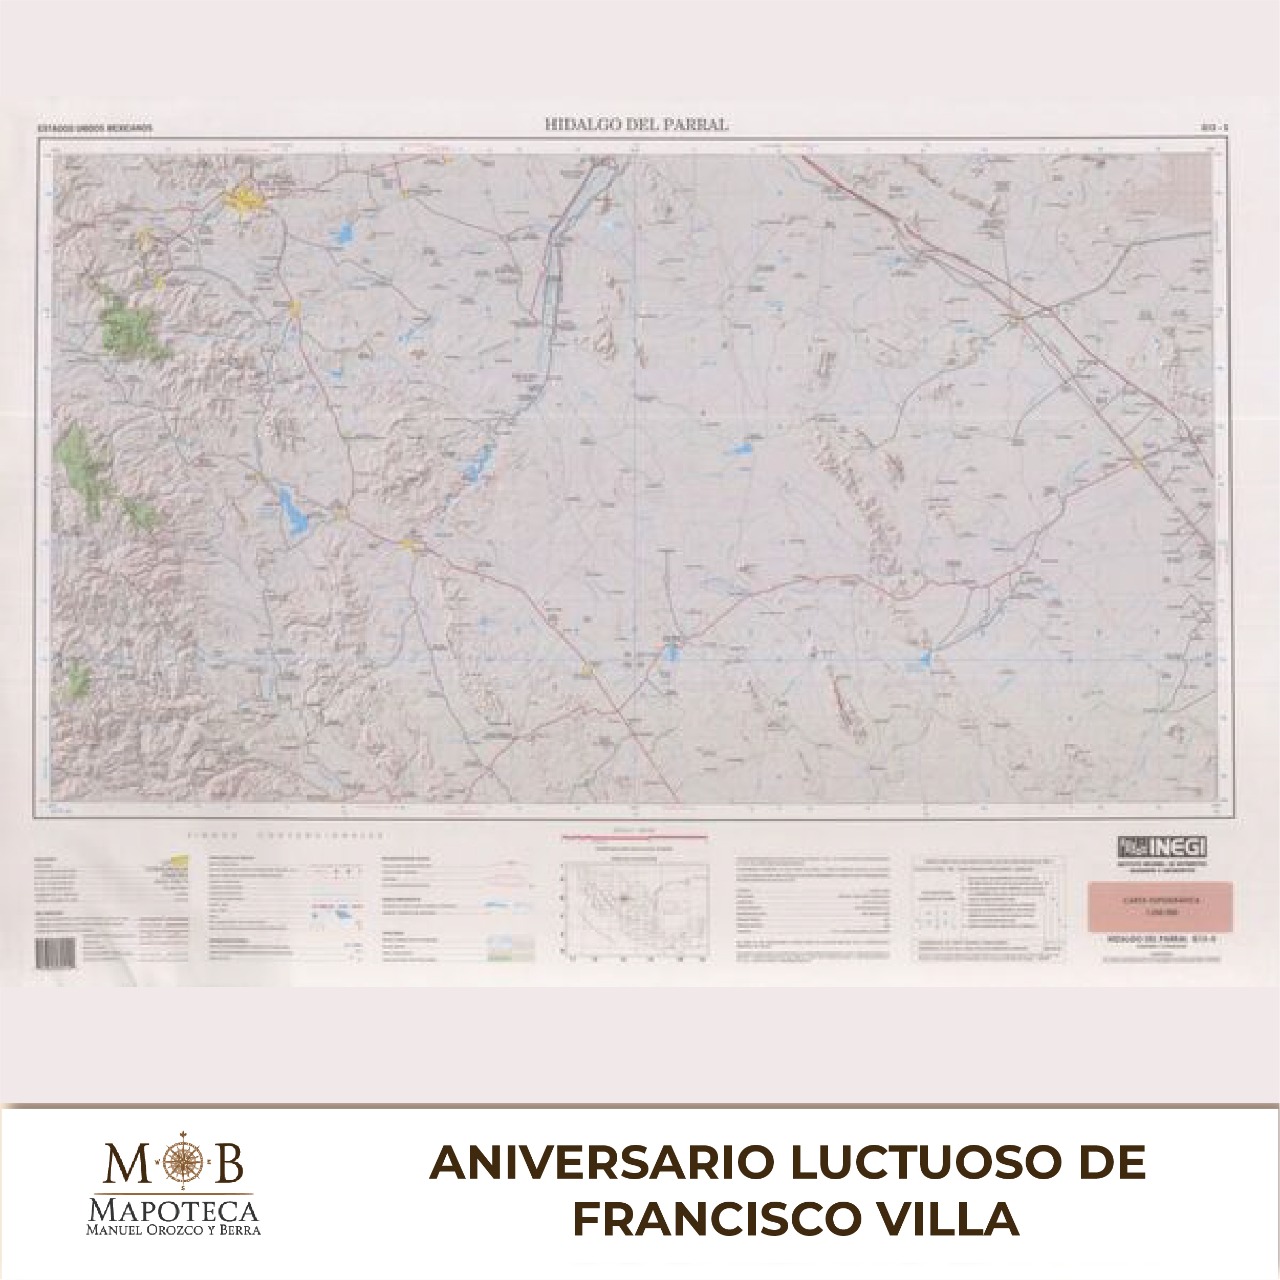 Para recordar un año más del aniversario luctuoso de Francisco Villa, la Mapoteca Manuel Orozco y Berra presenta esta imagen titulada: “Carta topográfica de Hidalgo del Parral”. 